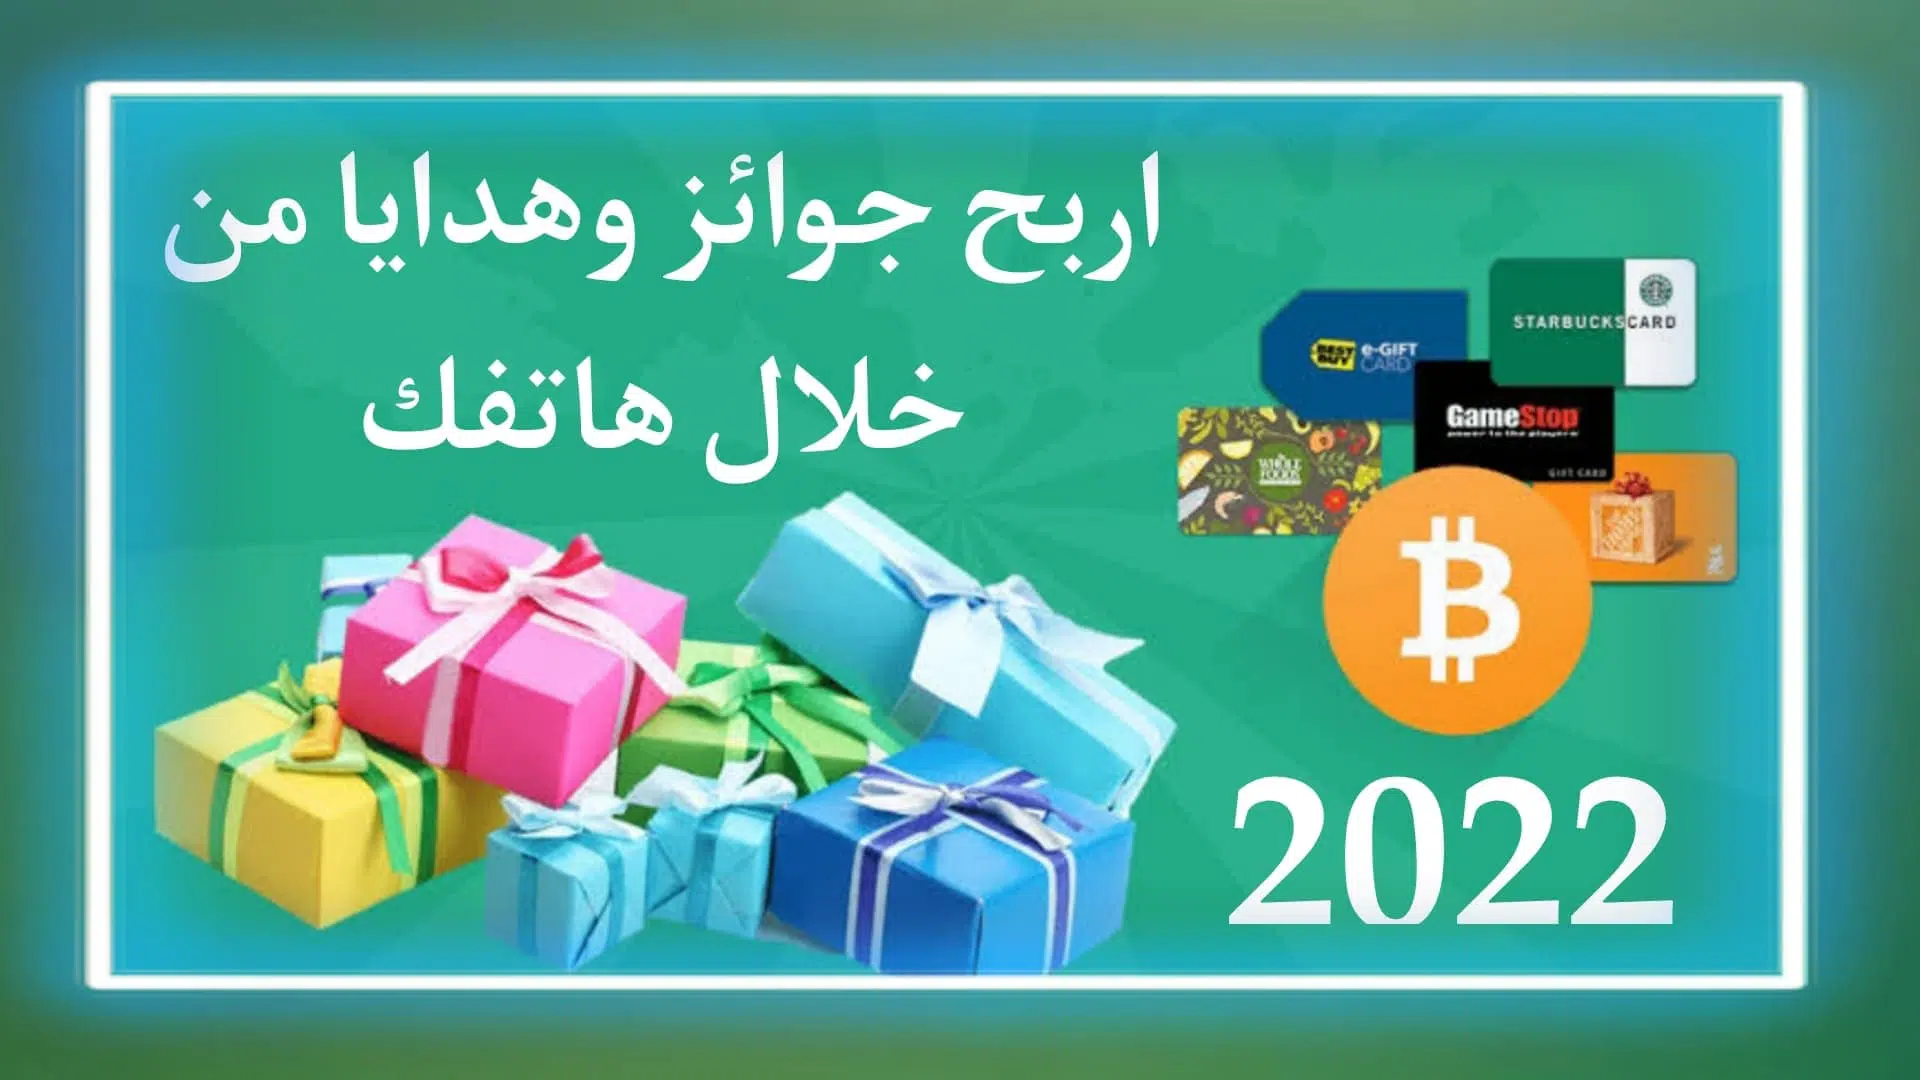 العاب ربح جوائز وهدايا من الانترنت مجانا من خلال الهاتف